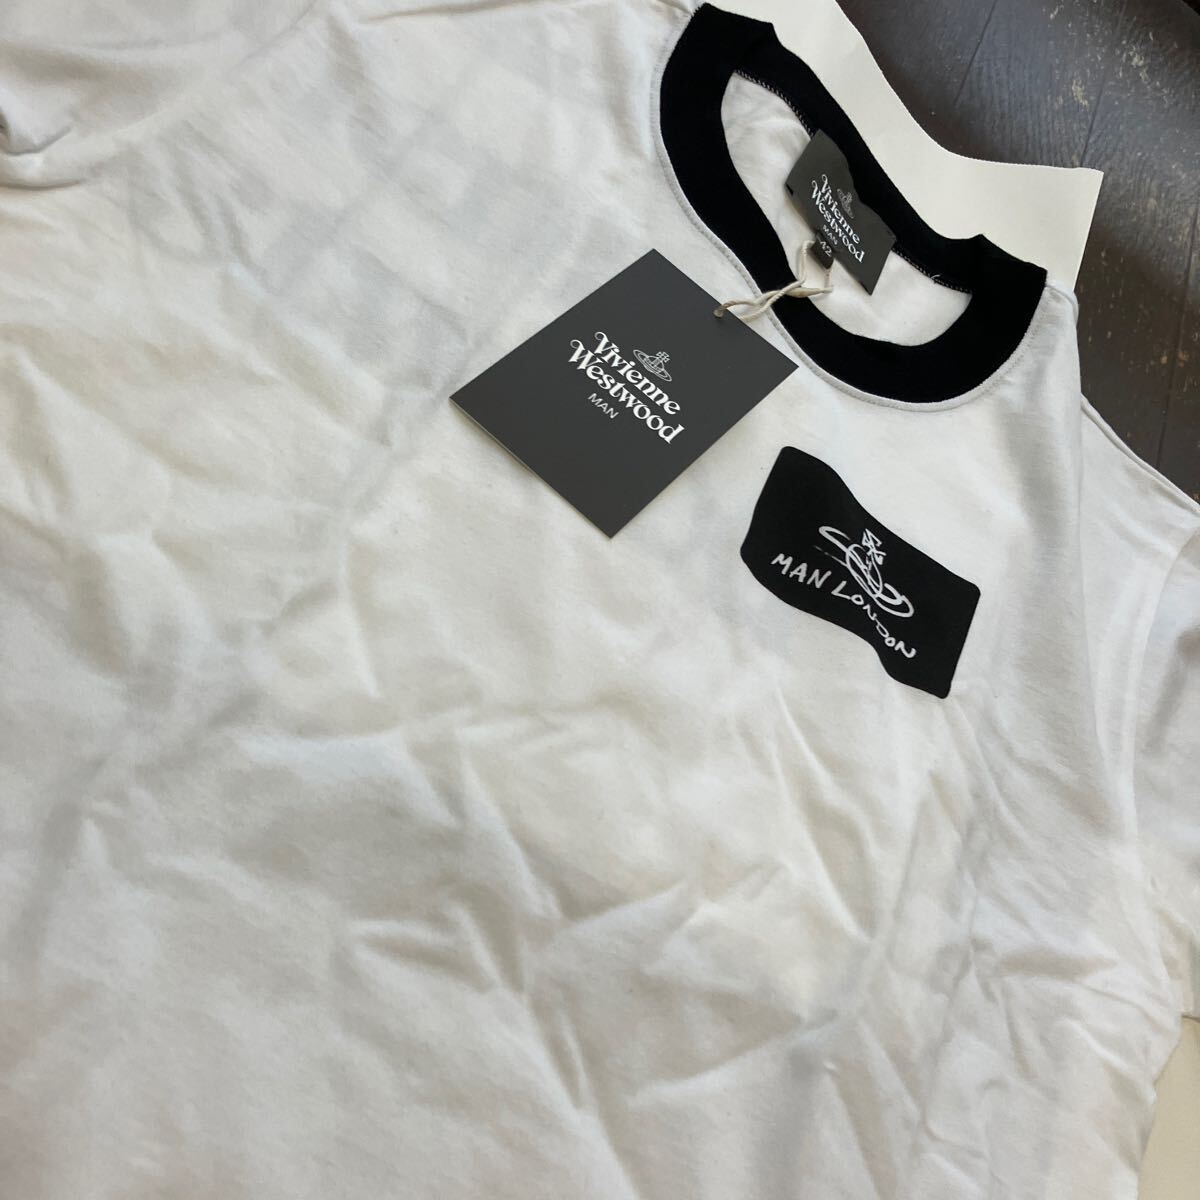  стоимость доставки включена  ● новый товар ● Vivienne Westwood  футболка с коротким руковом 42  белый  имя   бирка  T  сделано в Японии  ...  хлопок  100% ... талия  дерево   ...